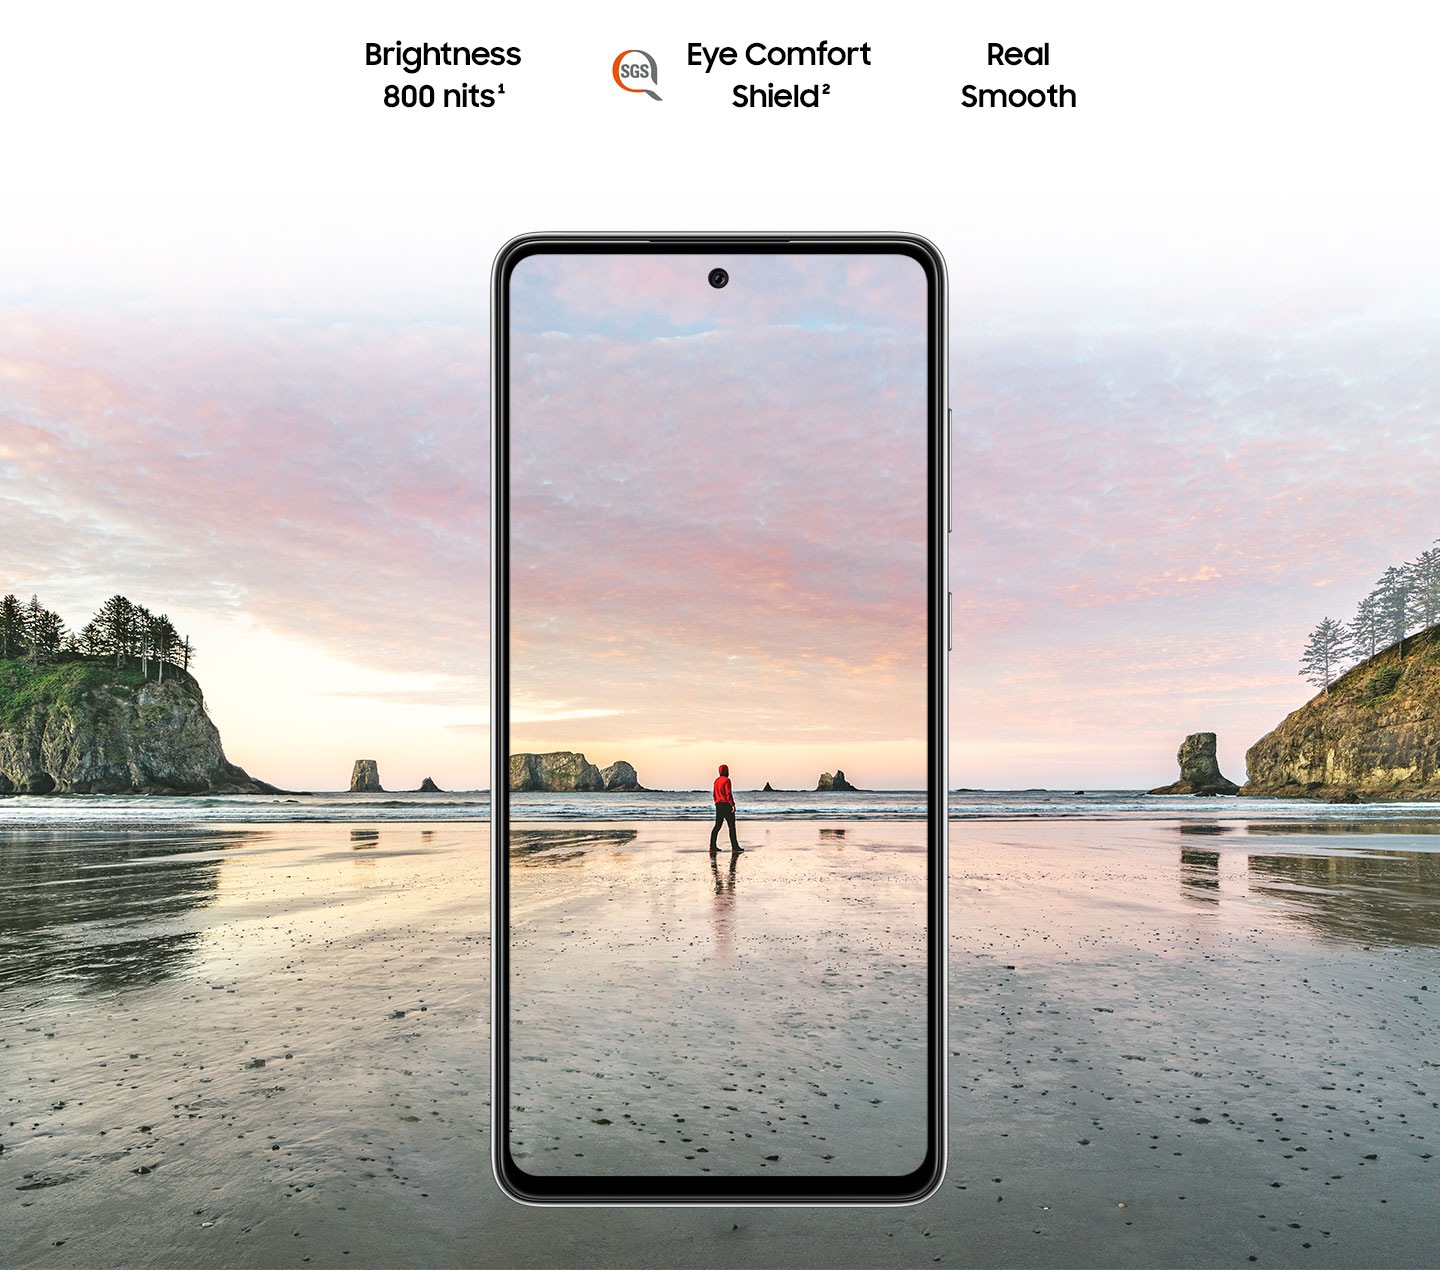 Galaxy A72 văzut din față. O scenă cu un bărbat care stă pe o plajă, la apusul soarelui. Brightness 800 nits, Eye Comfort Shield, cu sigla SGS și Real Smooth.